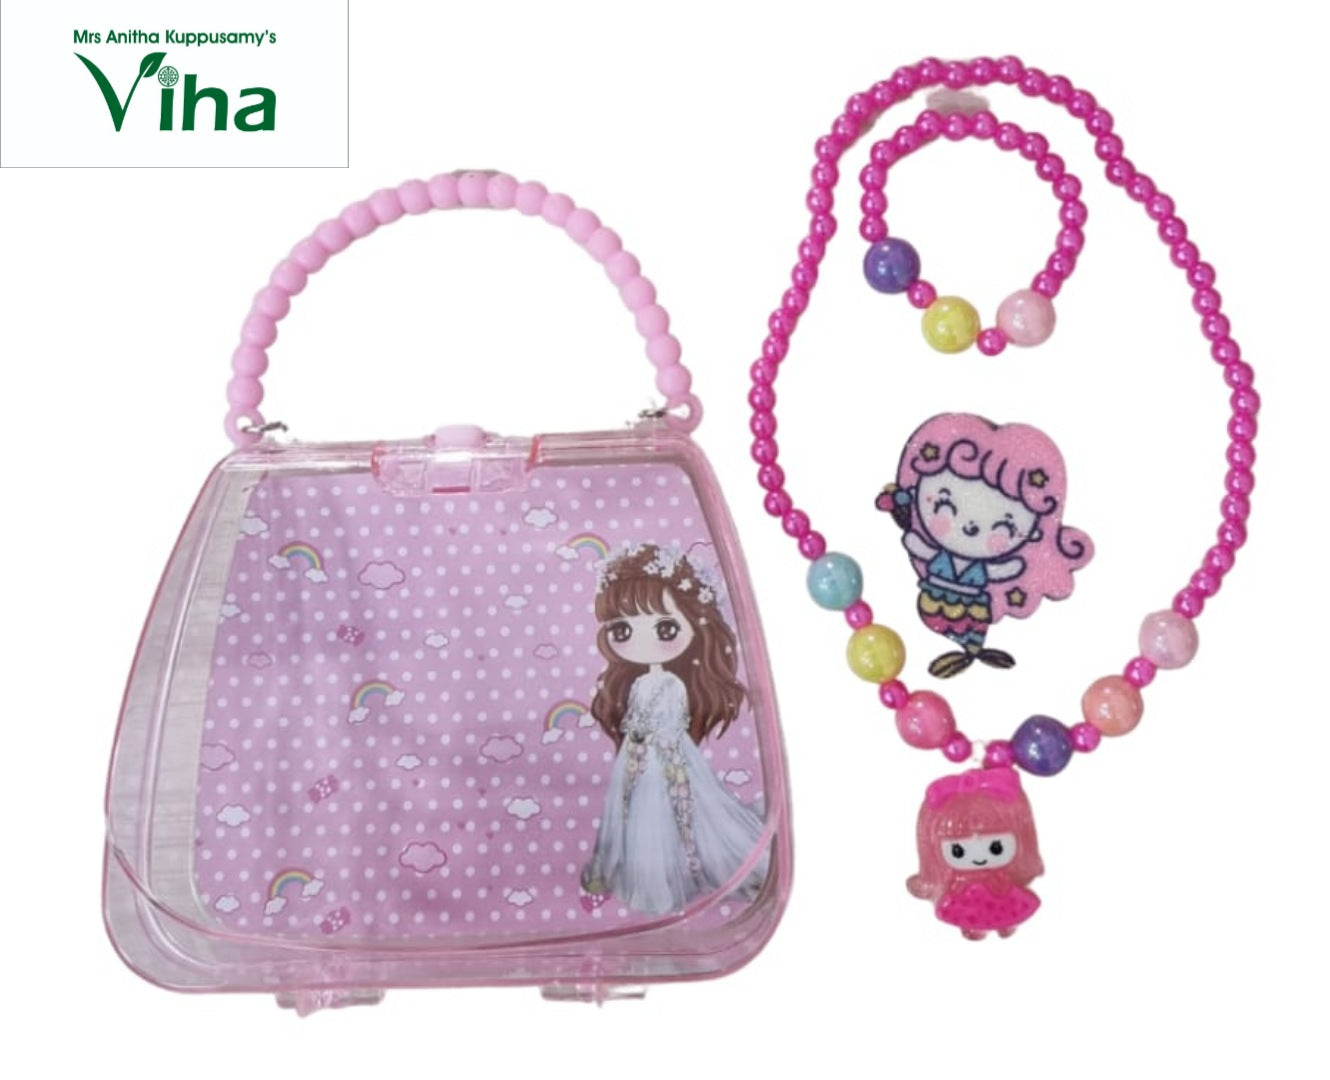 Buy Barbie Heart Detail Handbag with Dual Handles Online | Babyshop UAE